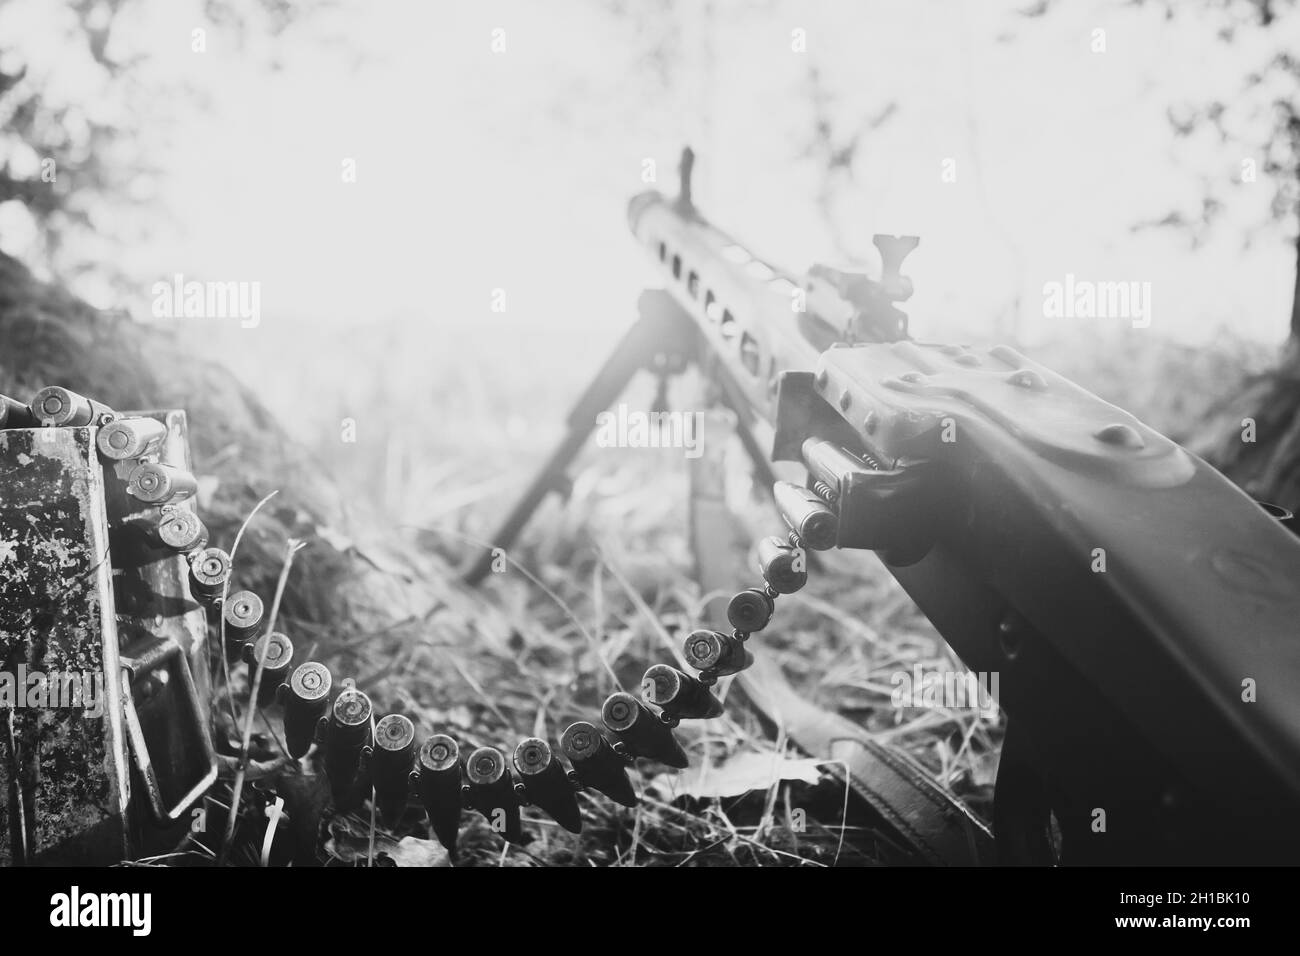 World War II German Wehrmacht Infantry Soldier Army Weapon. MG 42 Machine Gun On Ground In Forest Trench. WWII WW2 German Ammunition. Photo In Black Stock Photo